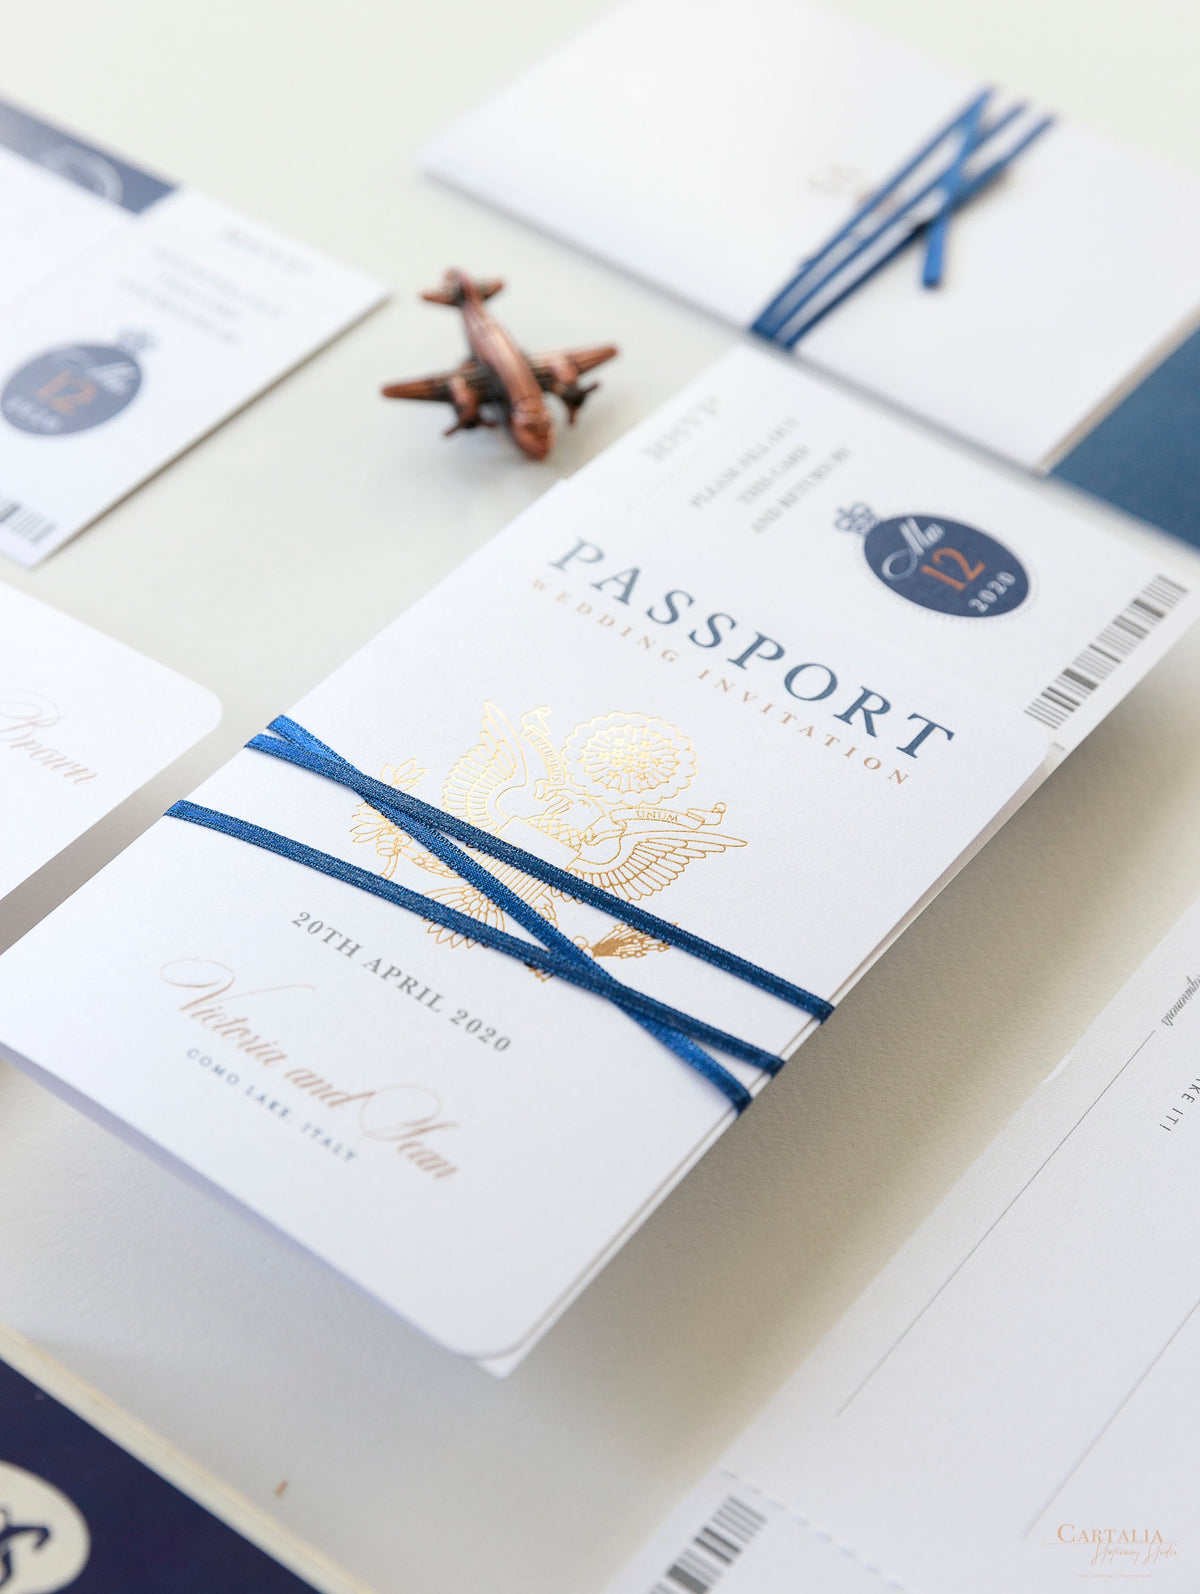 Suite de invitación con tarjeta de embarque y pasaporte azul marino y lámina de oro rosa de lujo